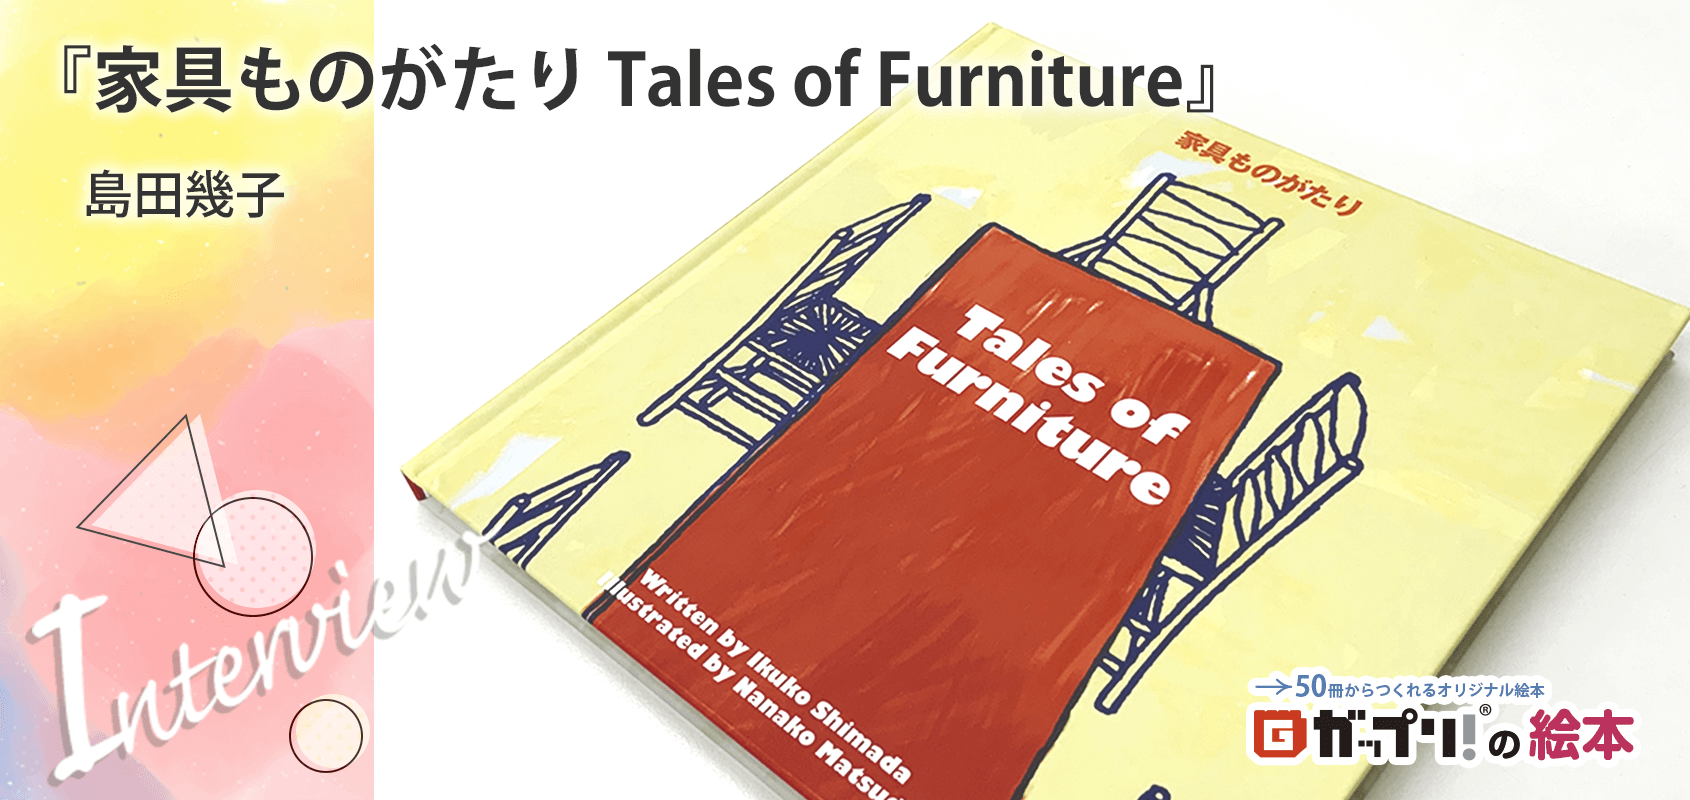 インテリアショップ「Karf」の企画担当、島田幾子さん製作のオリジナル絵本『家具ものがたり Tales of Furniture』